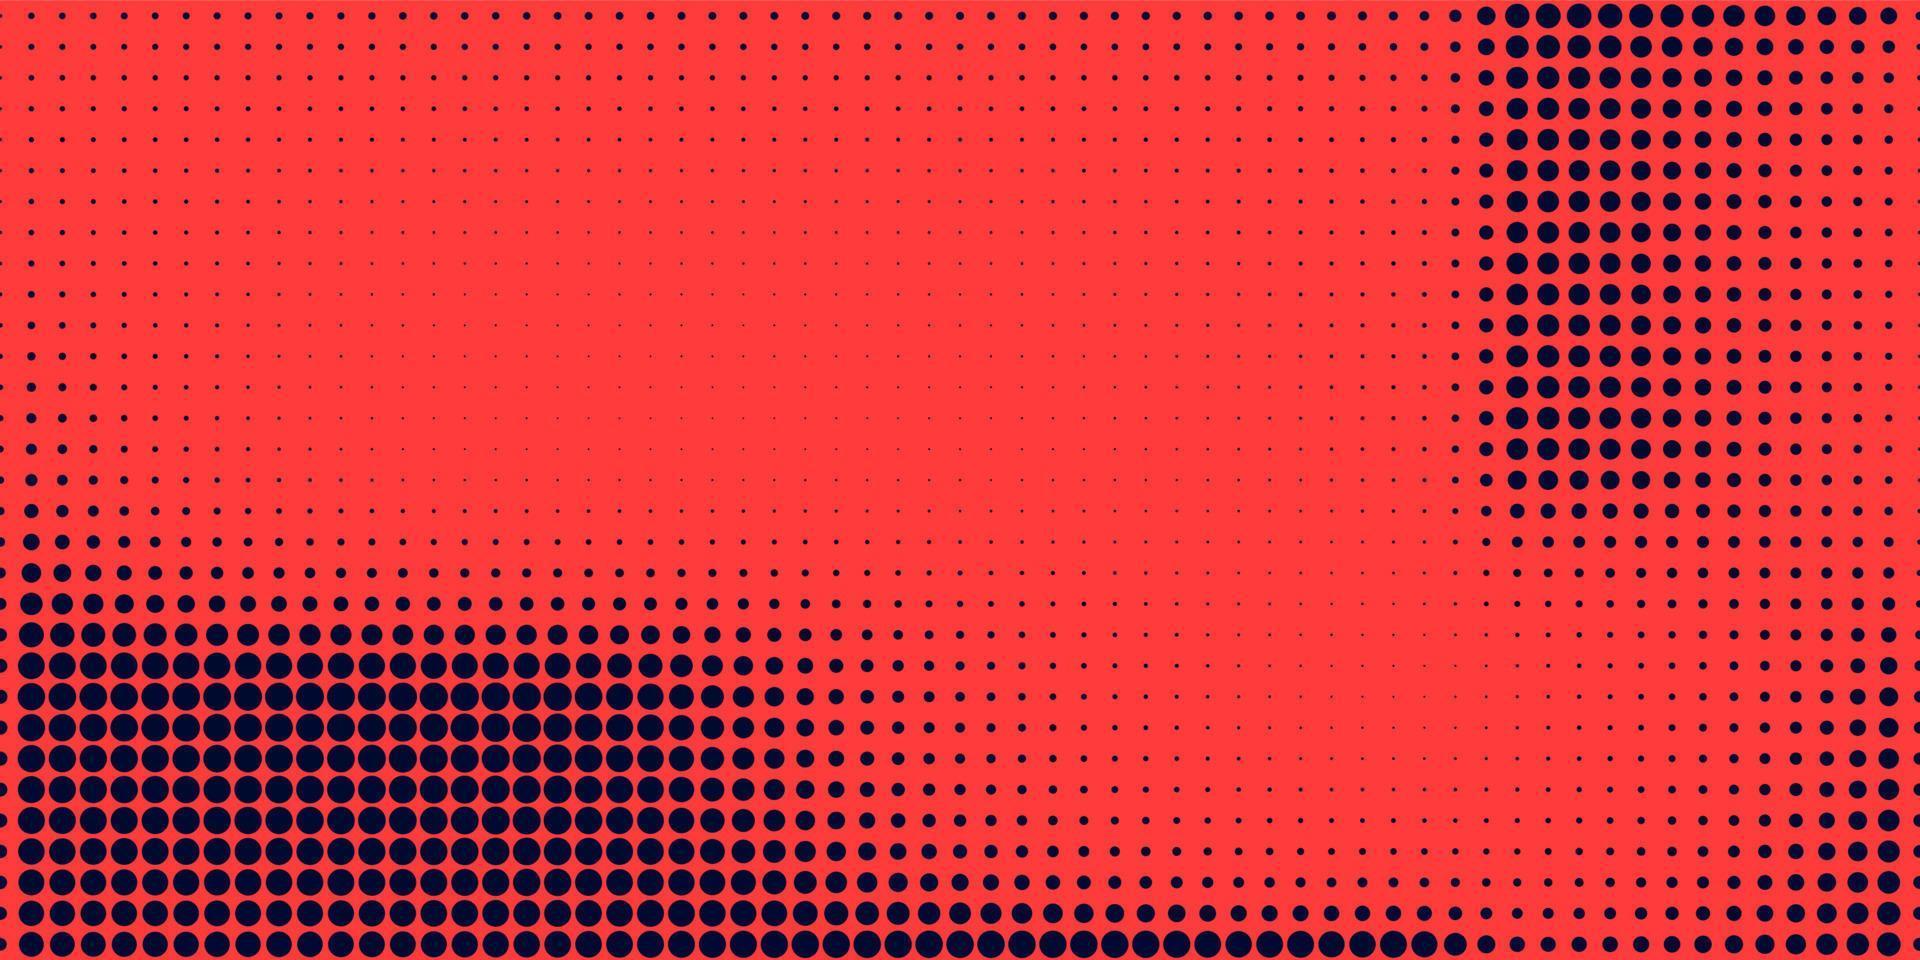 semitono en estilo abstracto. textura de vector de banner retro geométrico. impresión moderna. fondo azul oscuro y rojo. efecto de luz